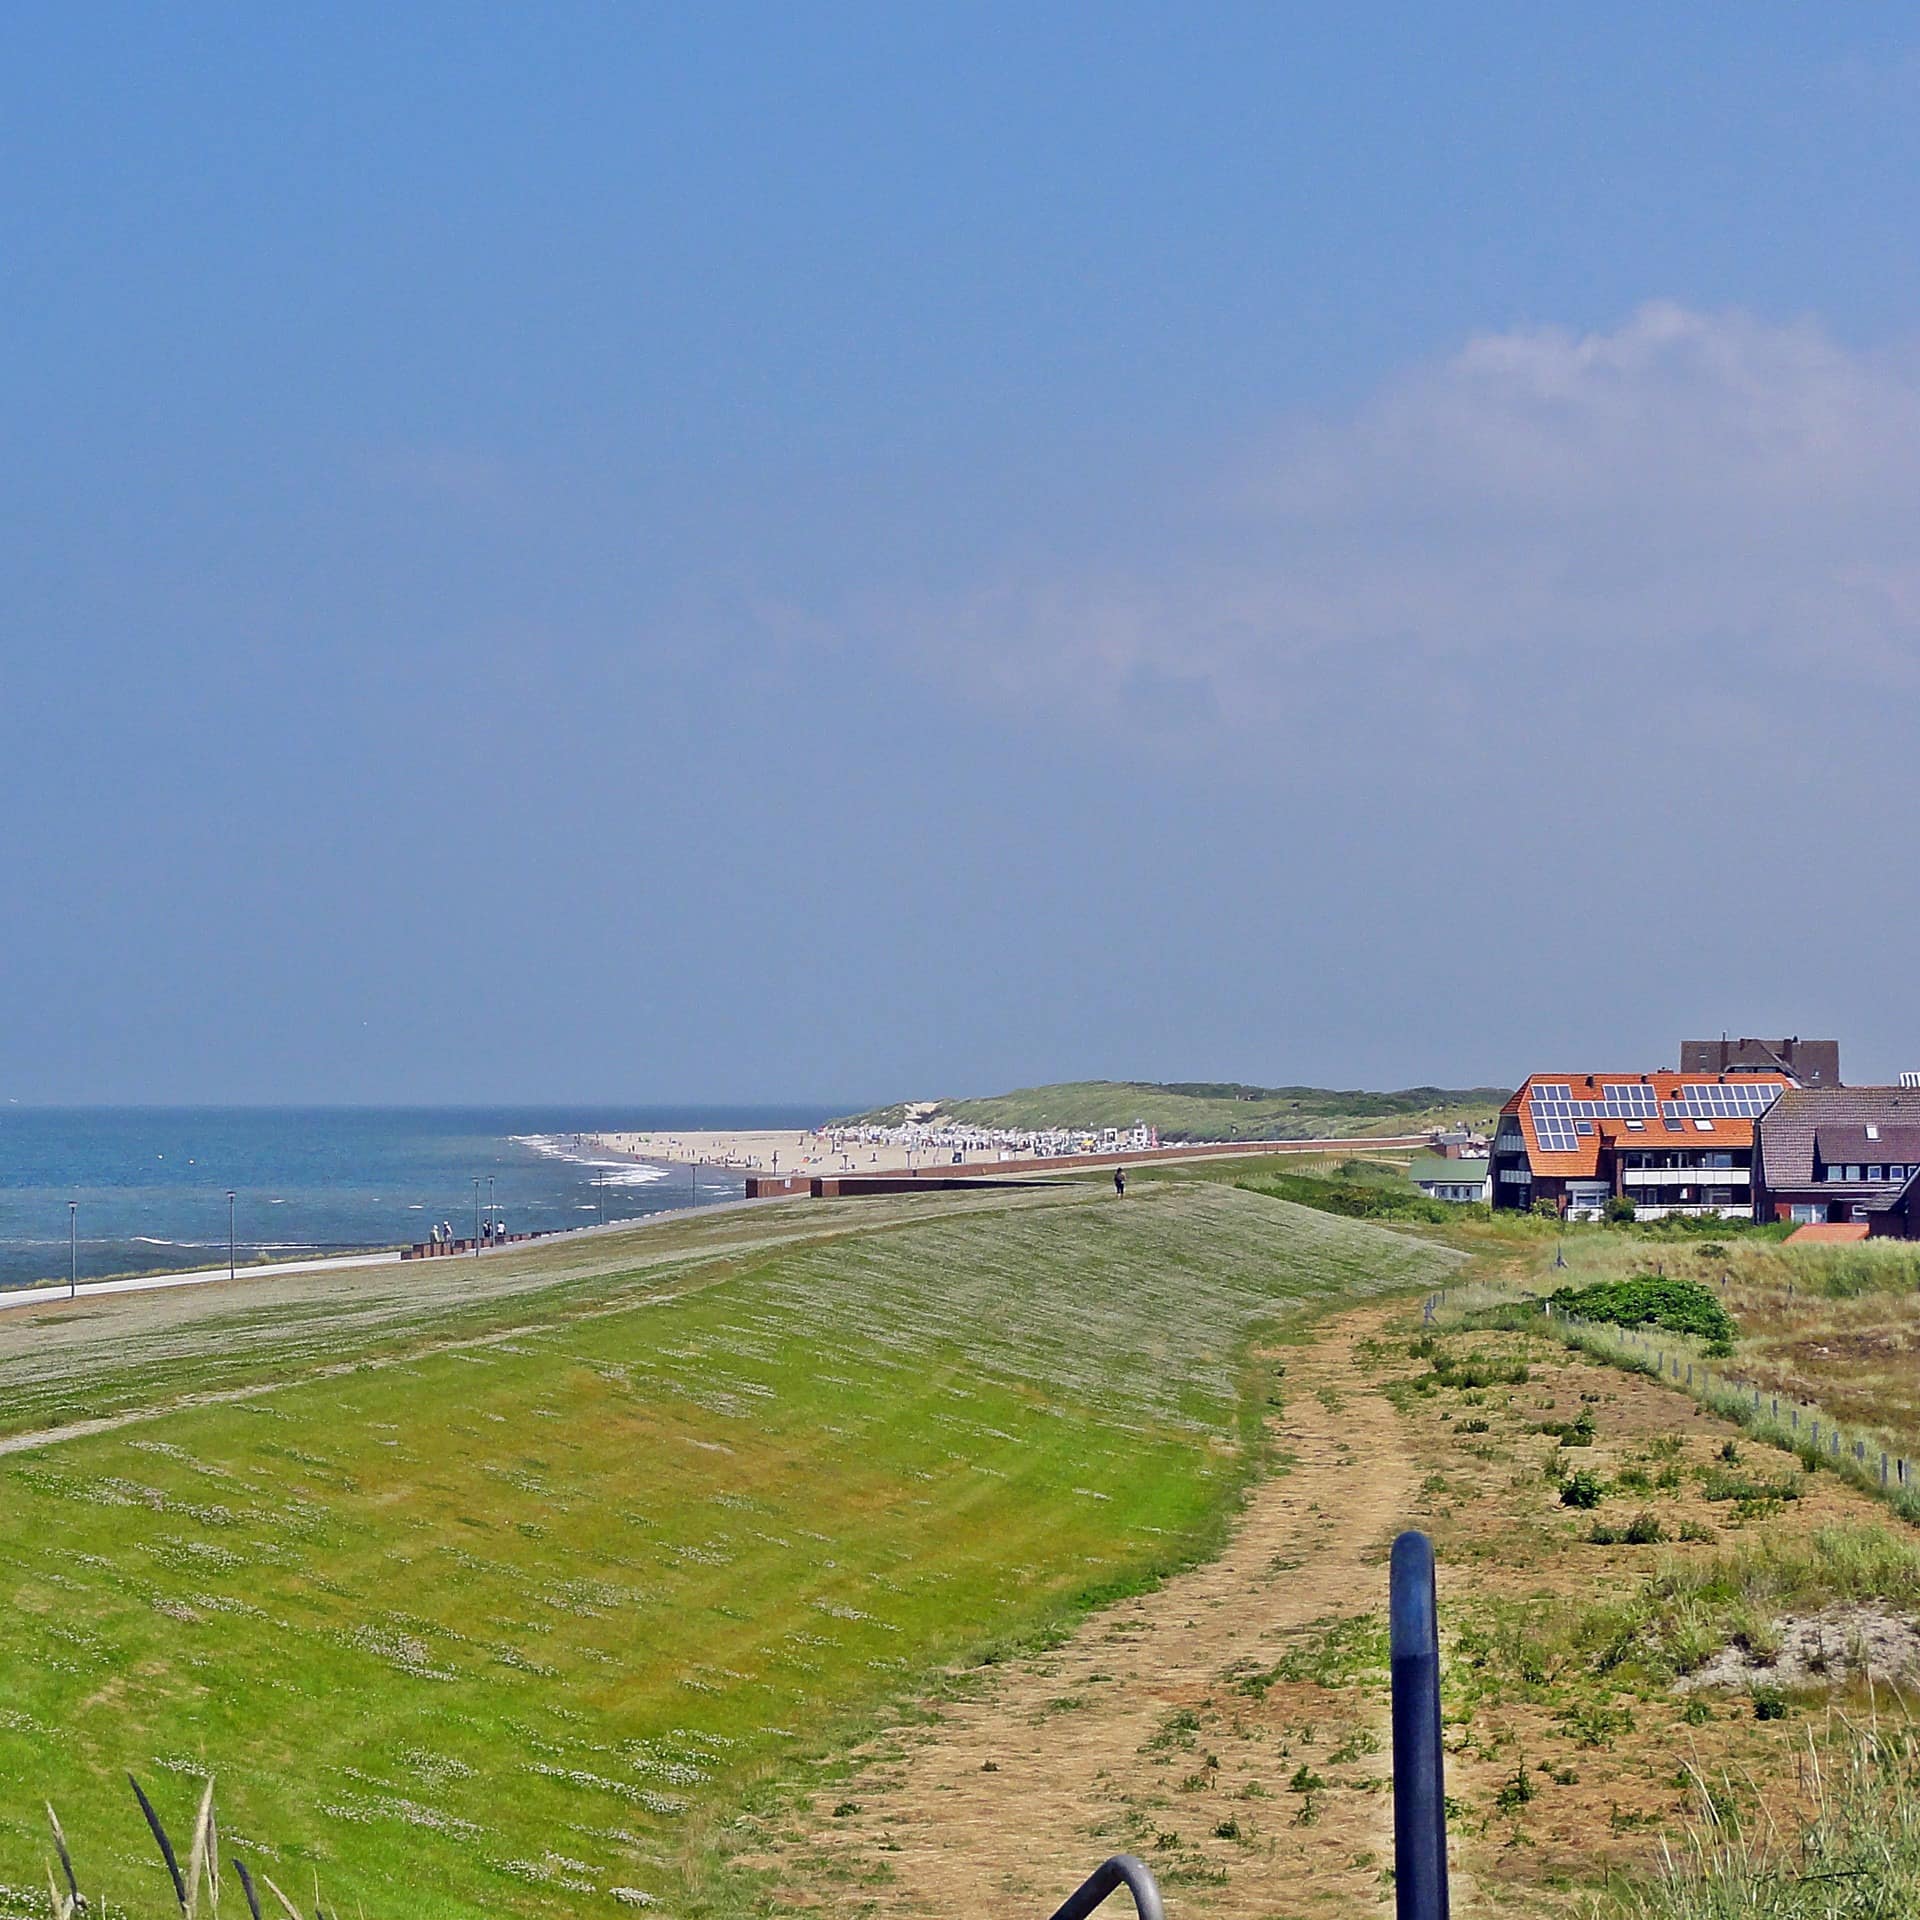 Blick am Deich von Baltrum entlang, links das Meer, rechts Häuser mit Ferienwohnungen